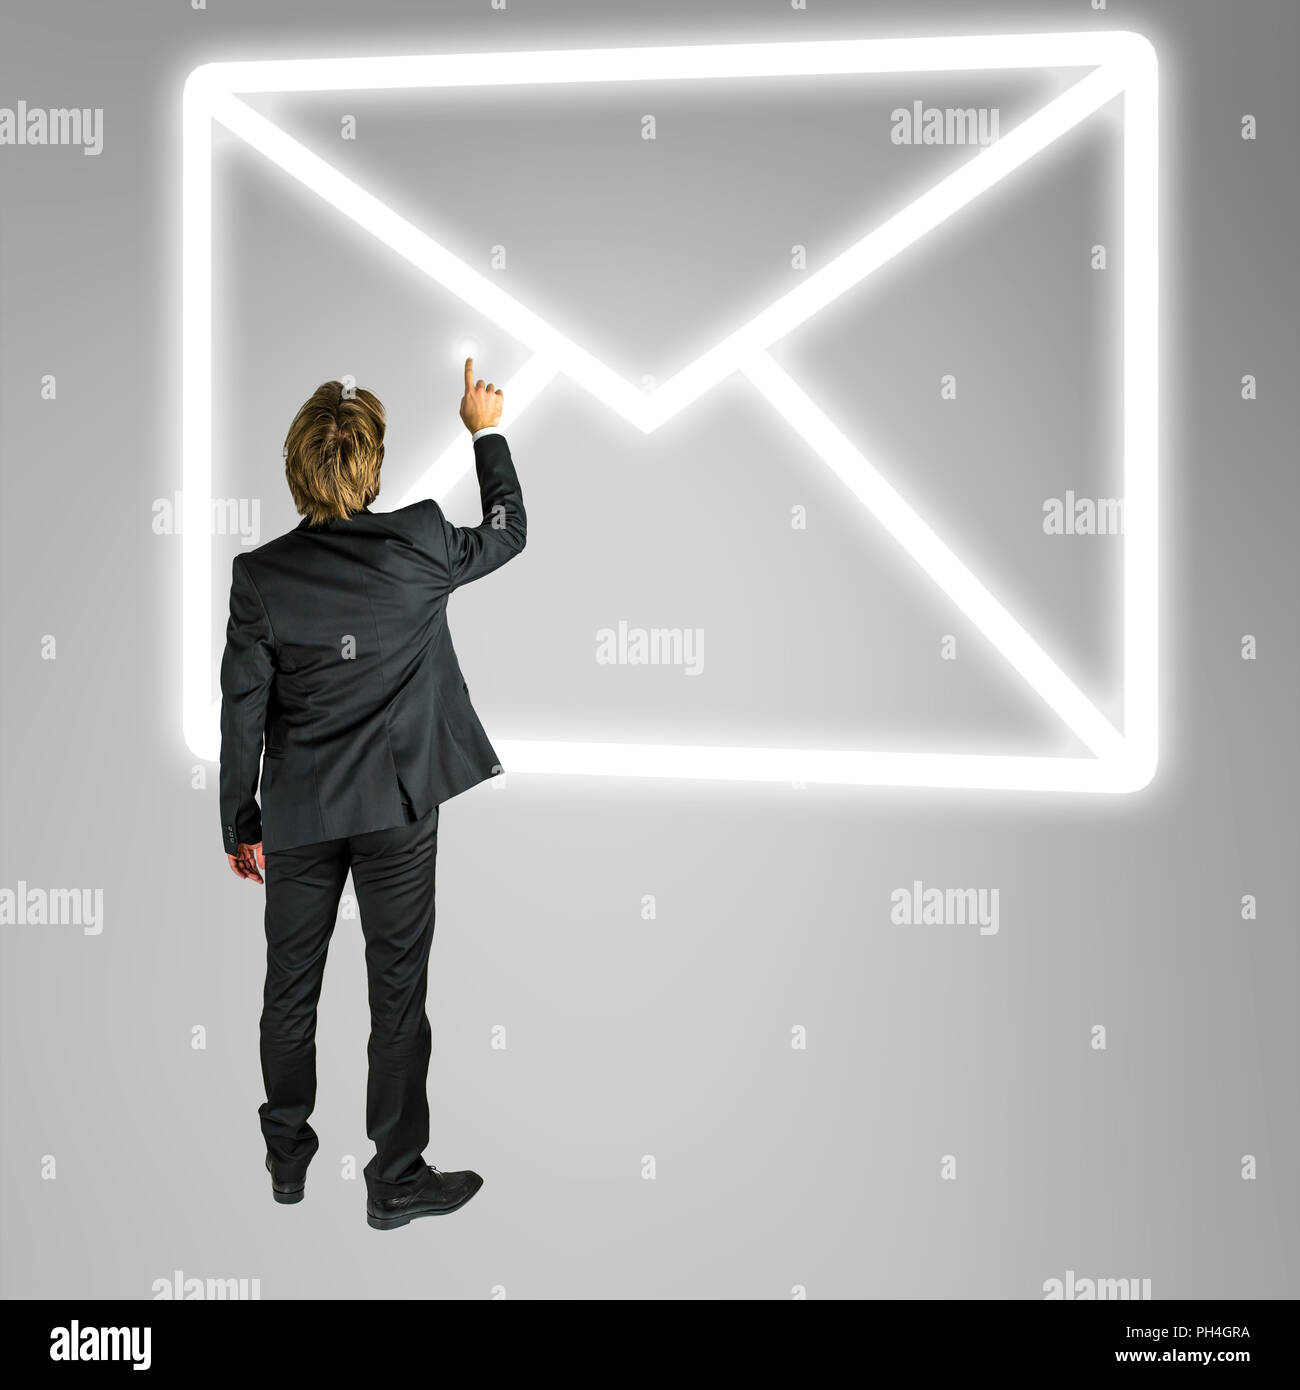 Unternehmer stehen vor einem Umschlag mail Symbol auf einem virtuellen Bildschirm oder Schnittstelle konzeptionelle von online Kontakt und Kommunikation Stockfoto